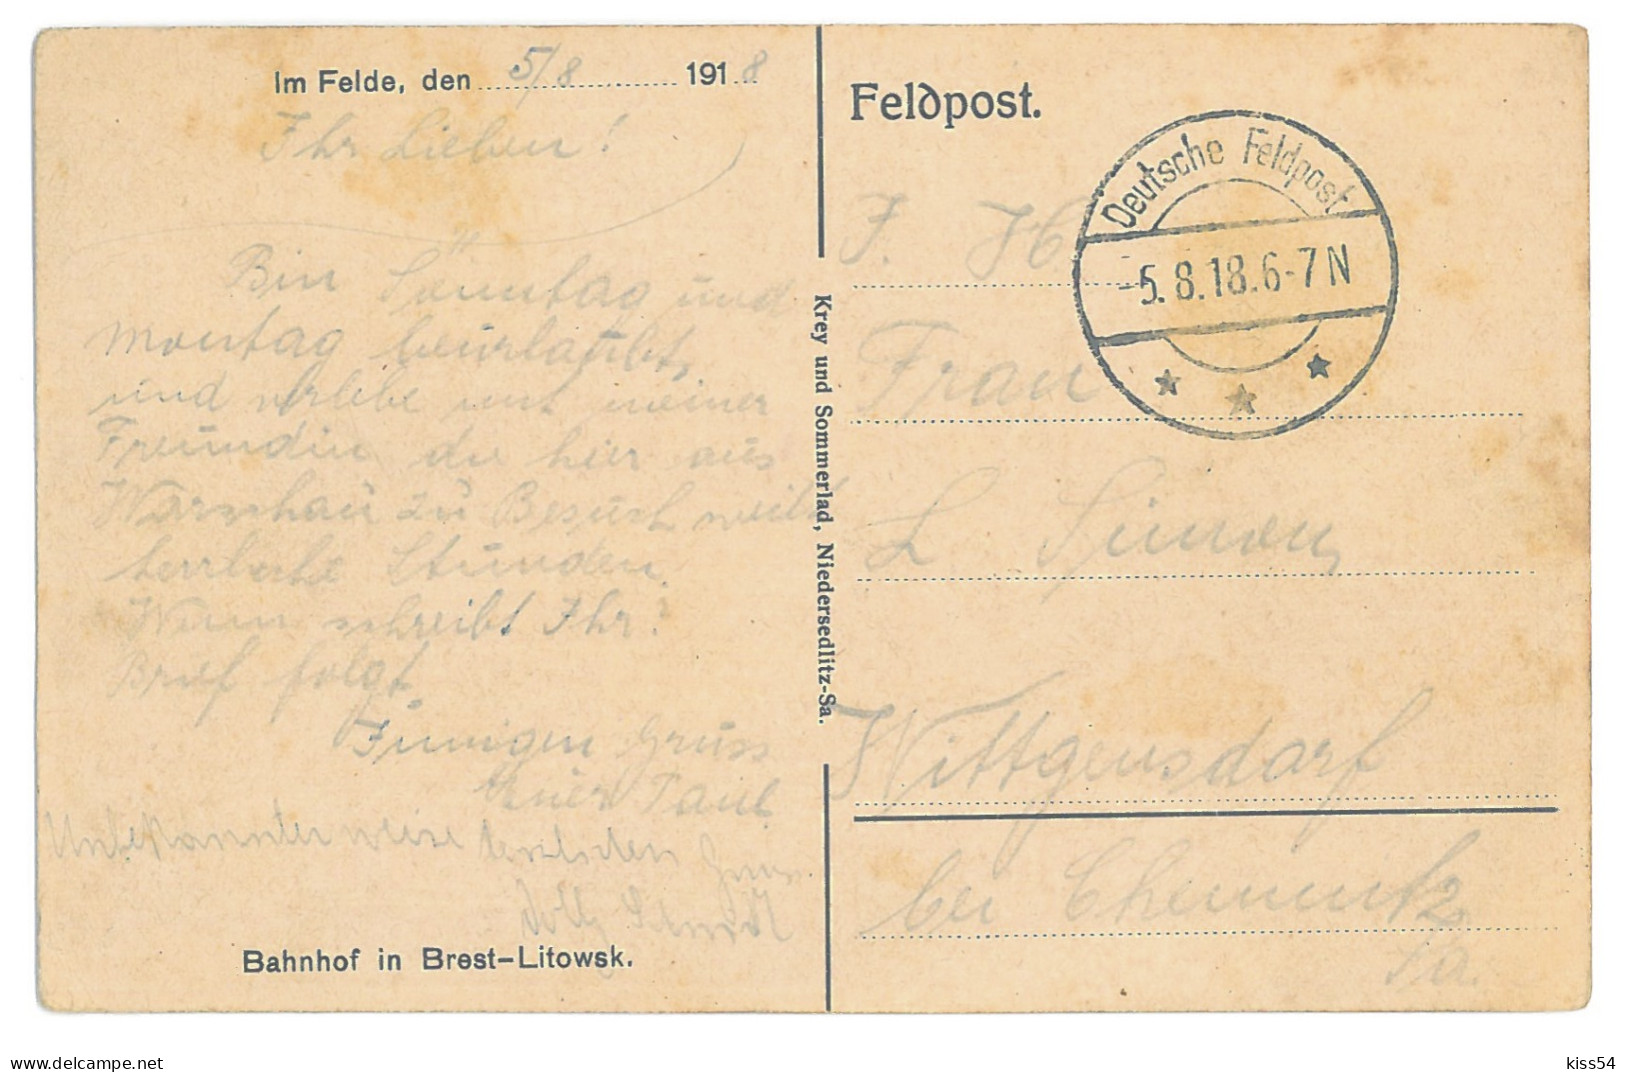 BL 34 - 14624 BREST LITOWSK, Belarus, Railway Station - Old Postcard, CENSOR - 1918 - Belarus